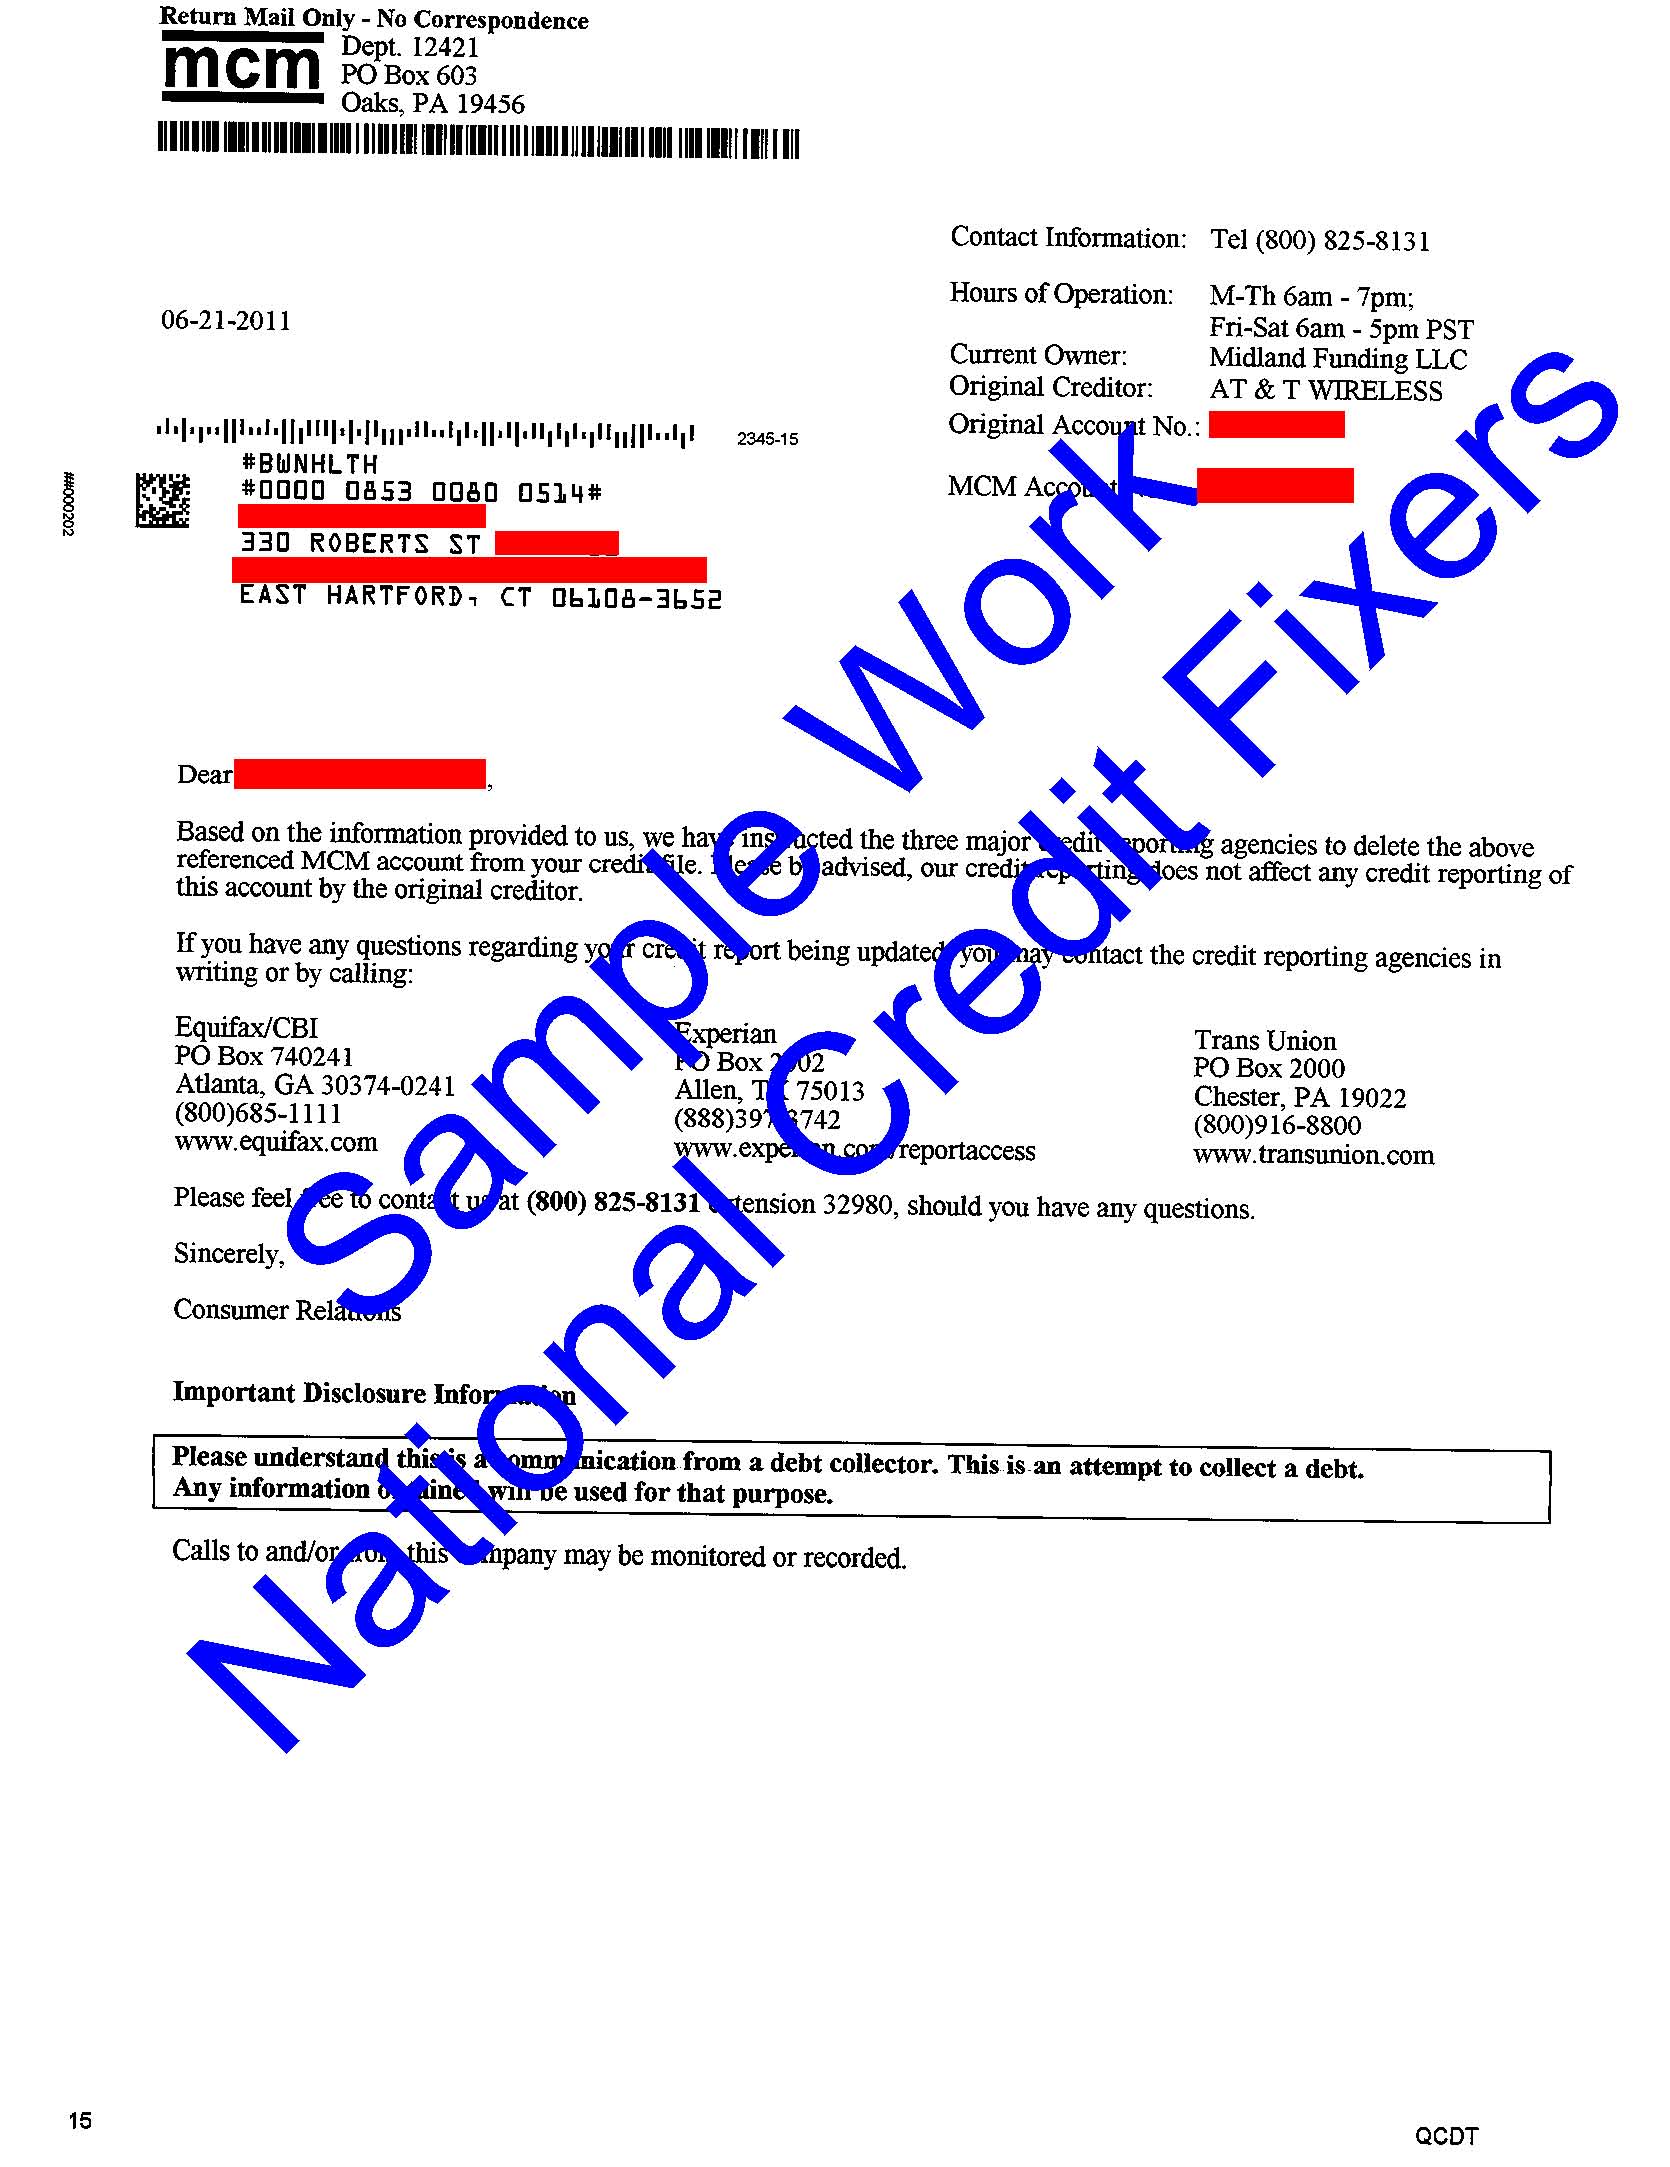 Midland Credit Management Deletion 1